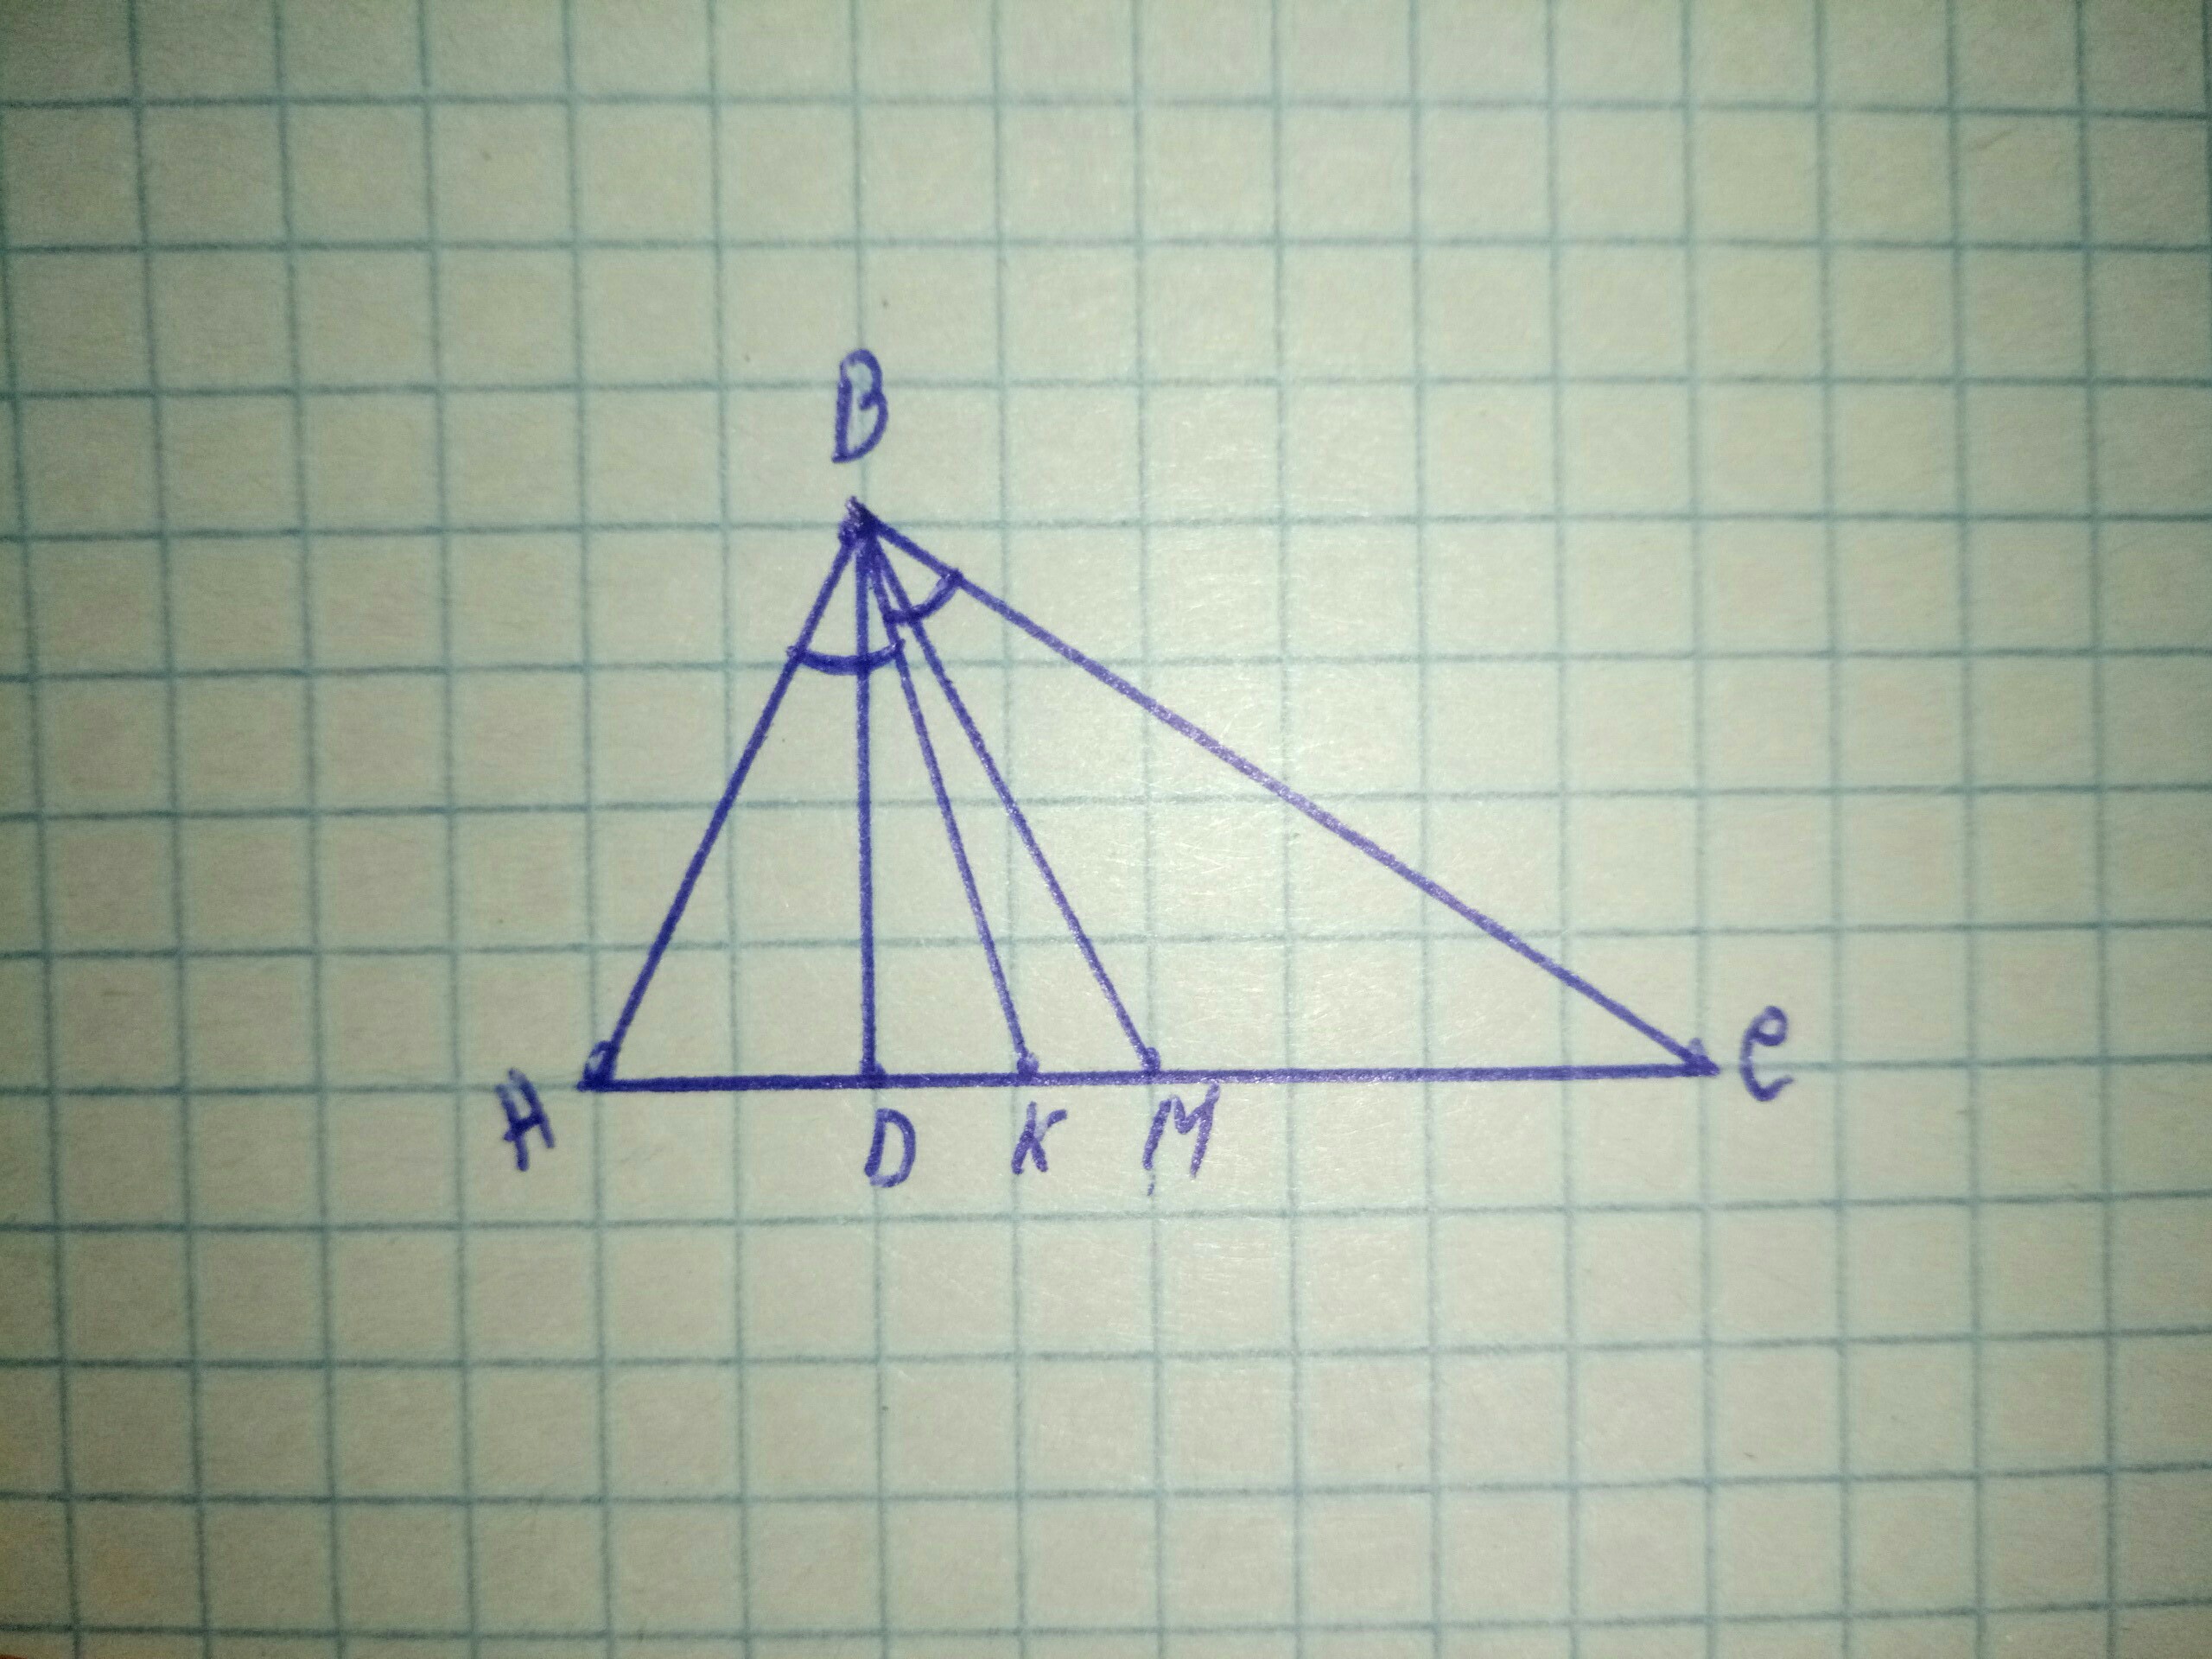 Дано вд биссектриса. Треугольник а б у биссектриса б к. Треугольник АВС С медианой ам. BK биссектриса треугольника ABC. Биссектриса BM треугольника ABC.